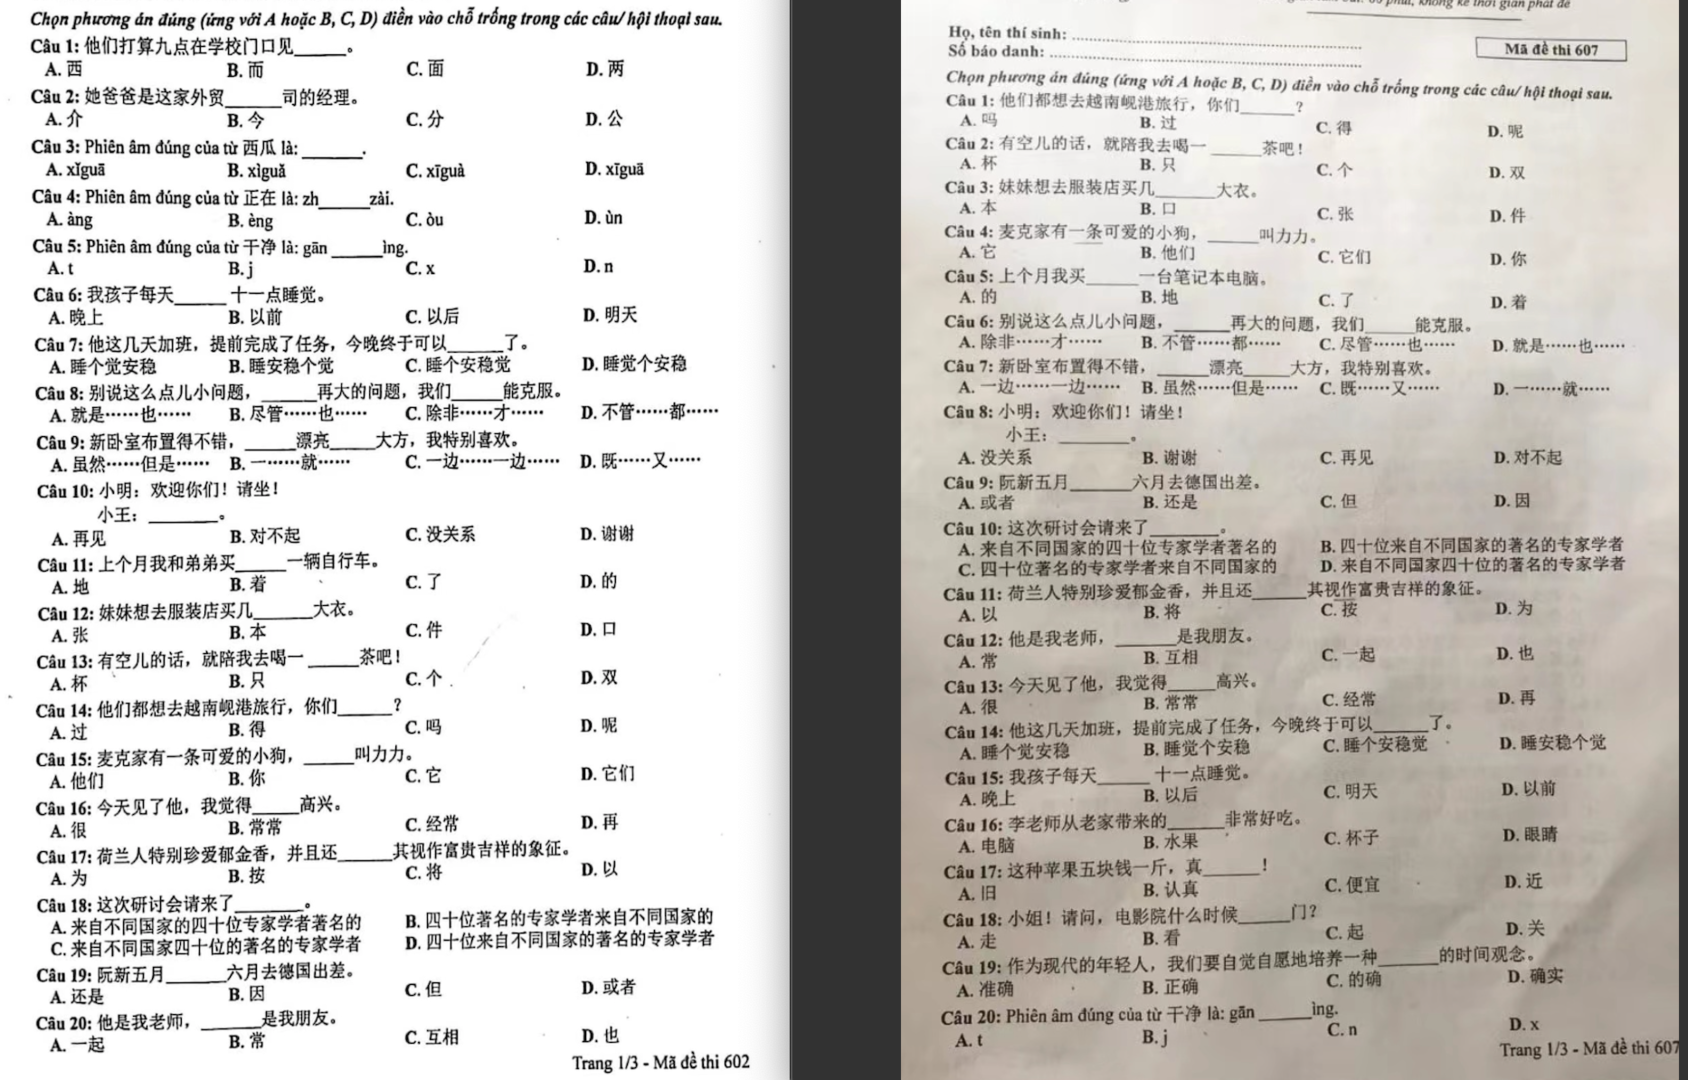 越南高考中文卷冲上热搜 越南高考汉语